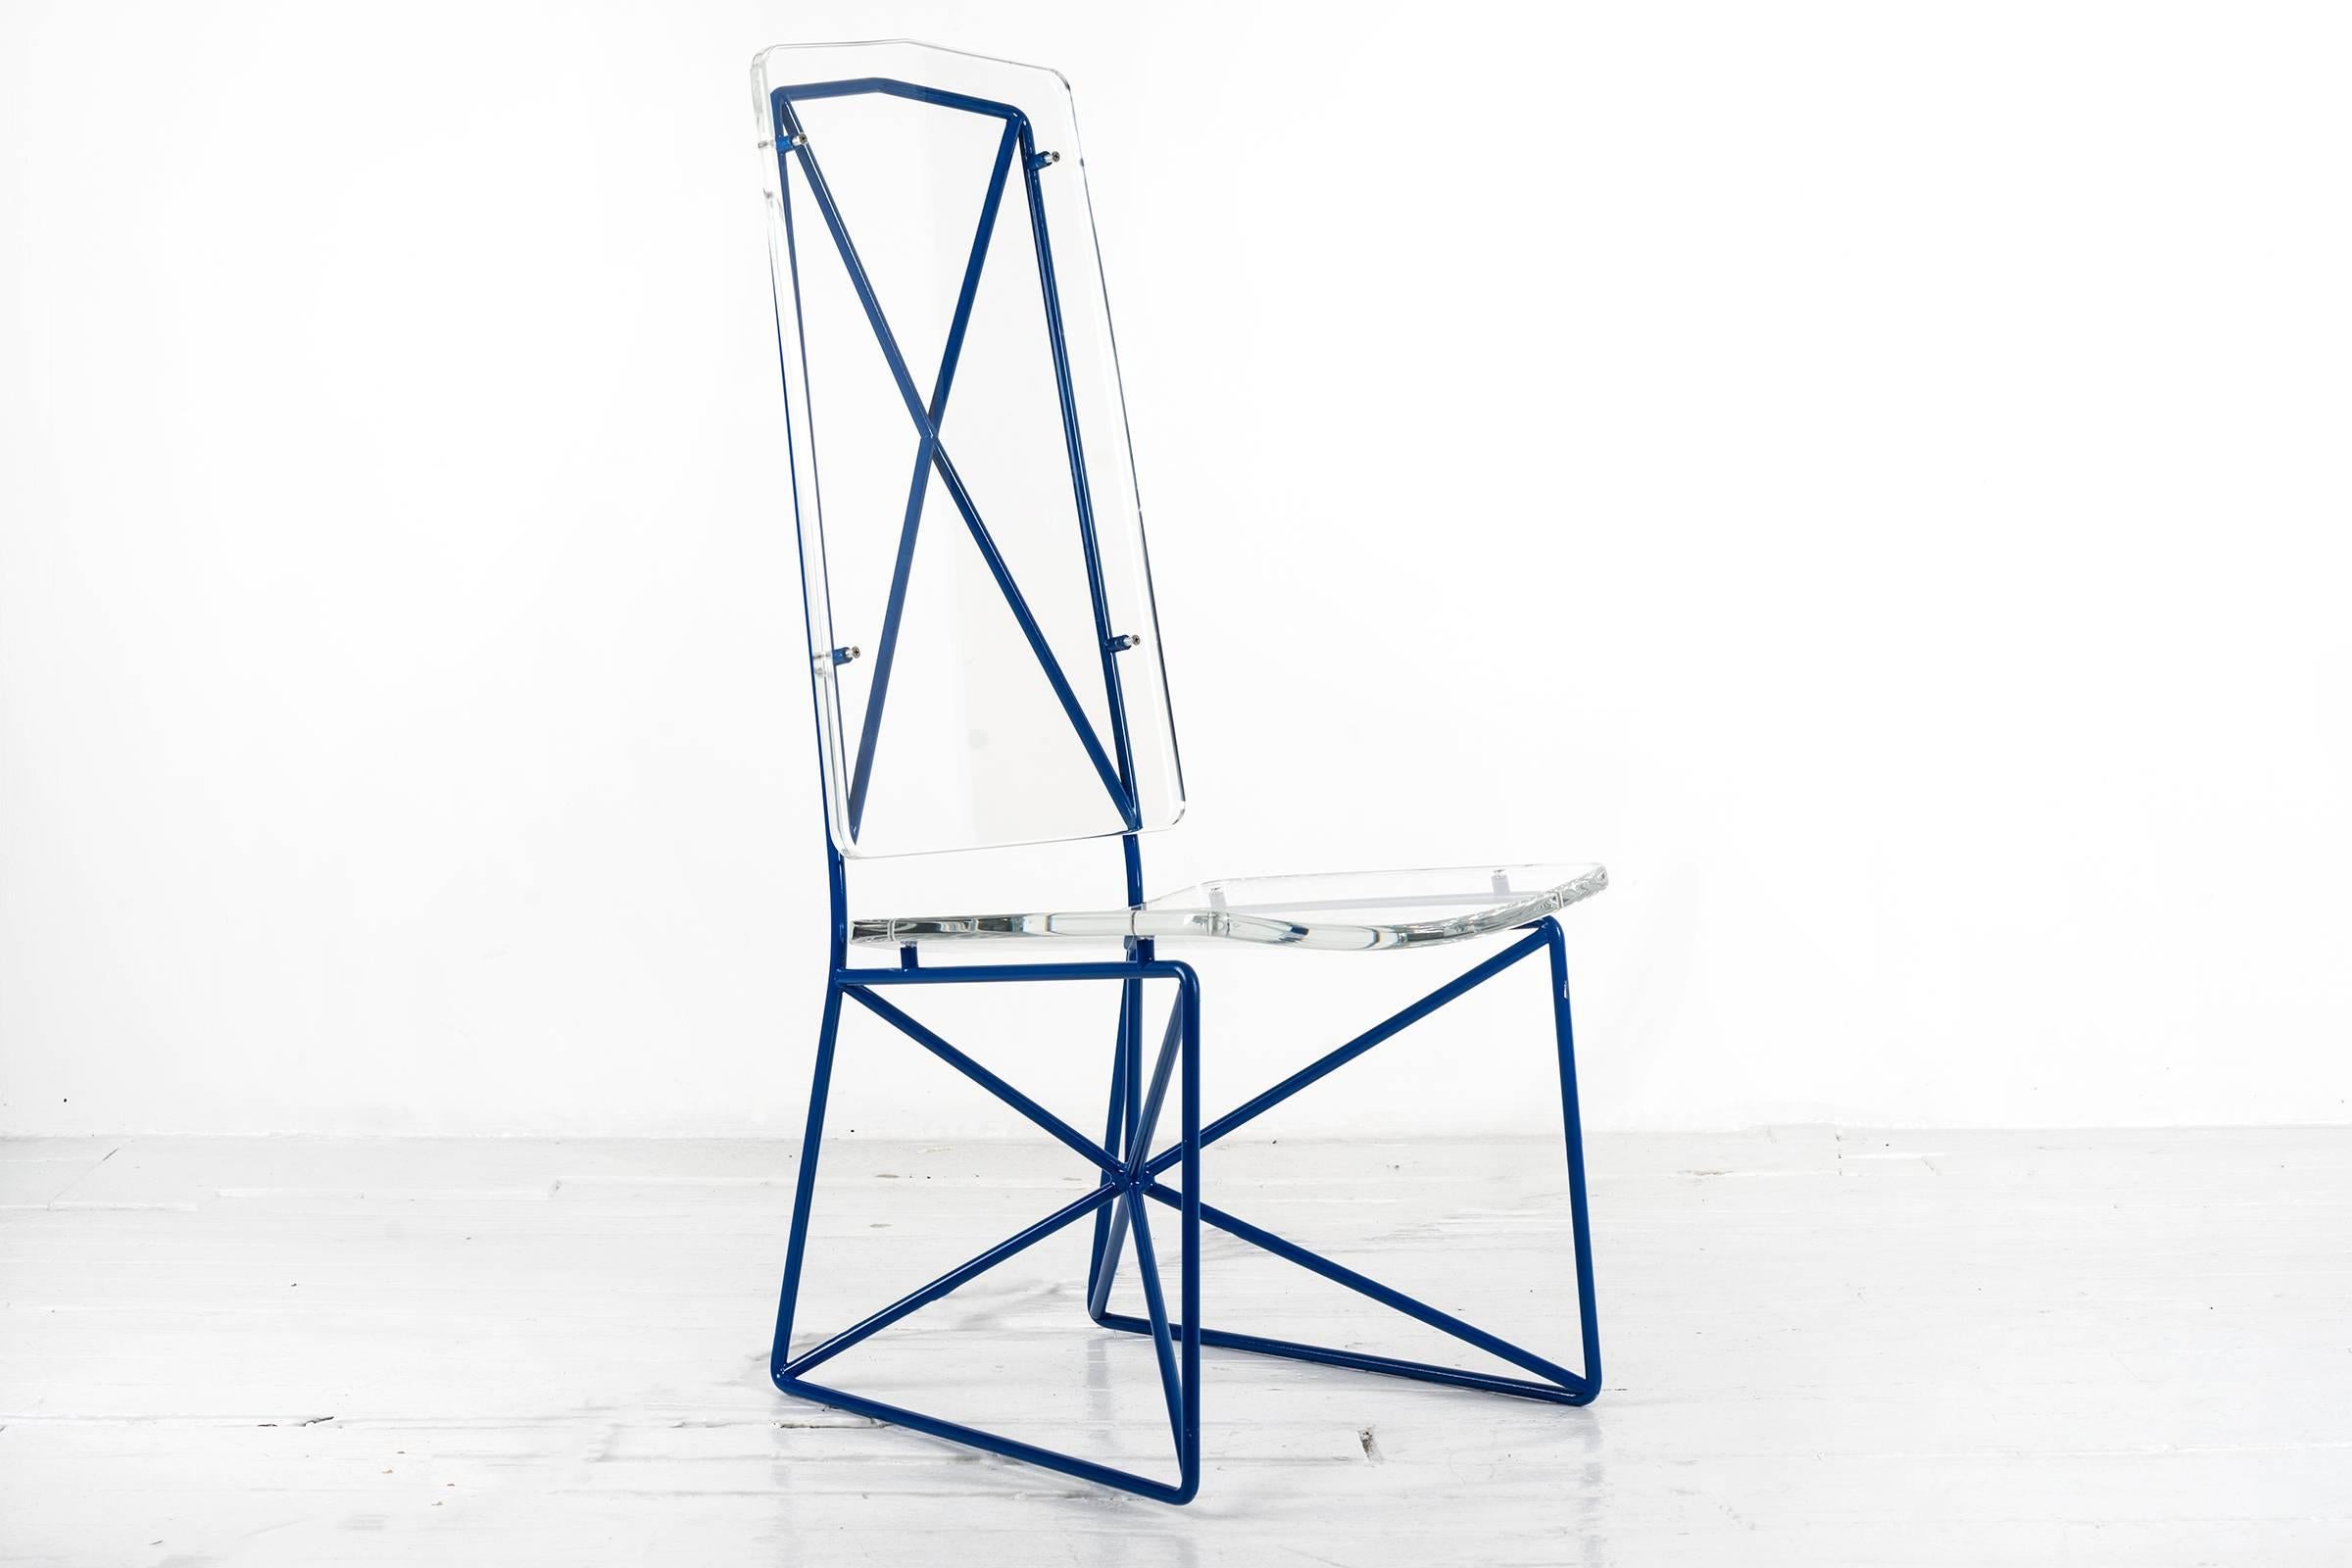 Ensemble de quatre chaises Prototype en acier et acrylique d'Arturo Pani.

Arturo Pani est l'une des figures les plus importantes du design pendant le Milagro Mexicano (1940-1970), une période d'expansion économique marquée par des tensions de